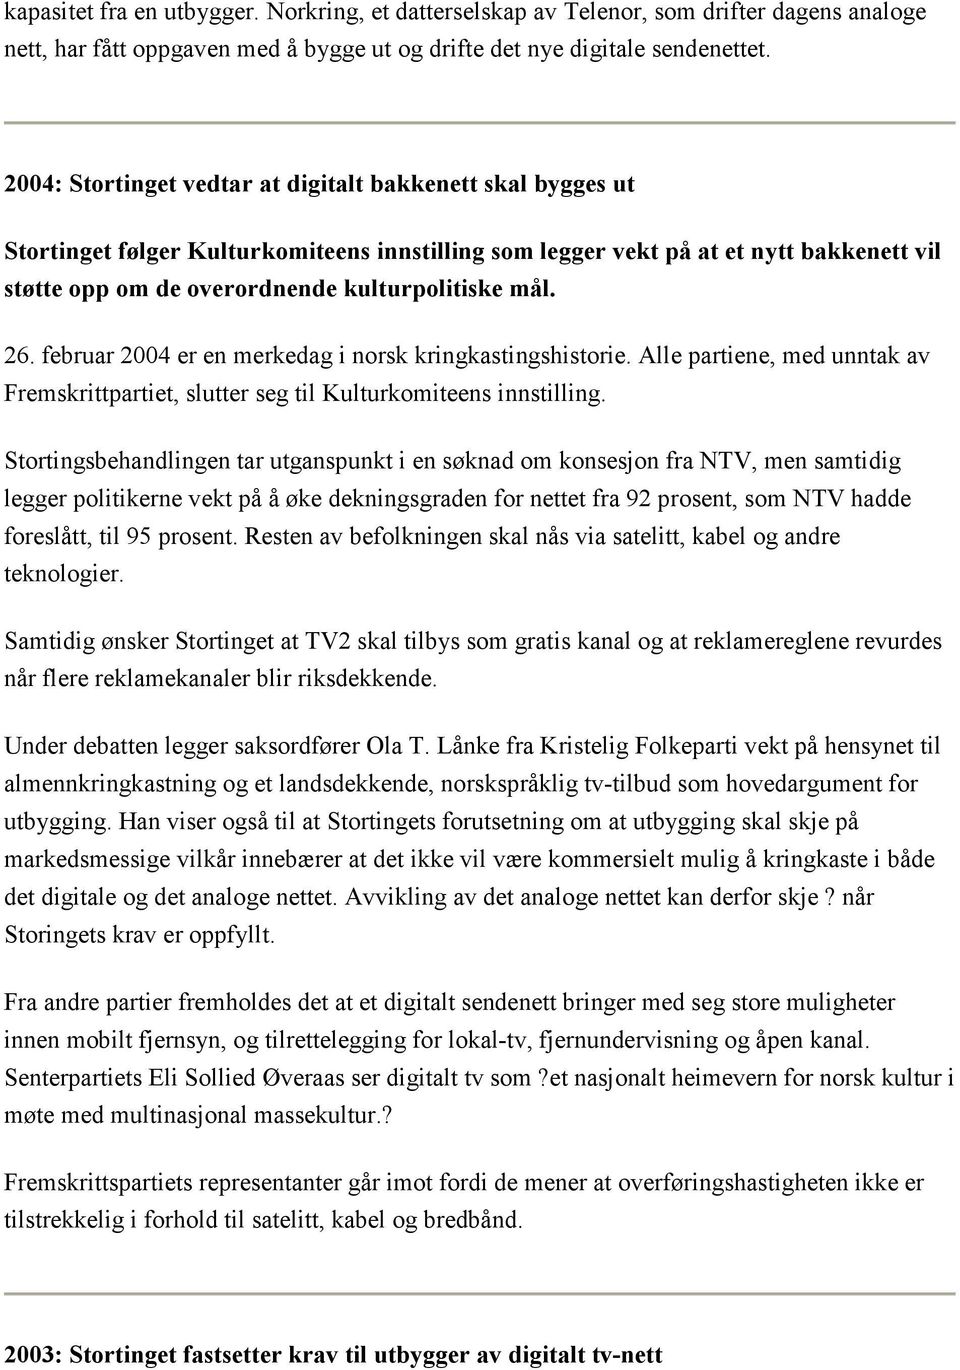 mål. 26. februar 2004 er en merkedag i norsk kringkastingshistorie. Alle partiene, med unntak av Fremskrittpartiet, slutter seg til Kulturkomiteens innstilling.